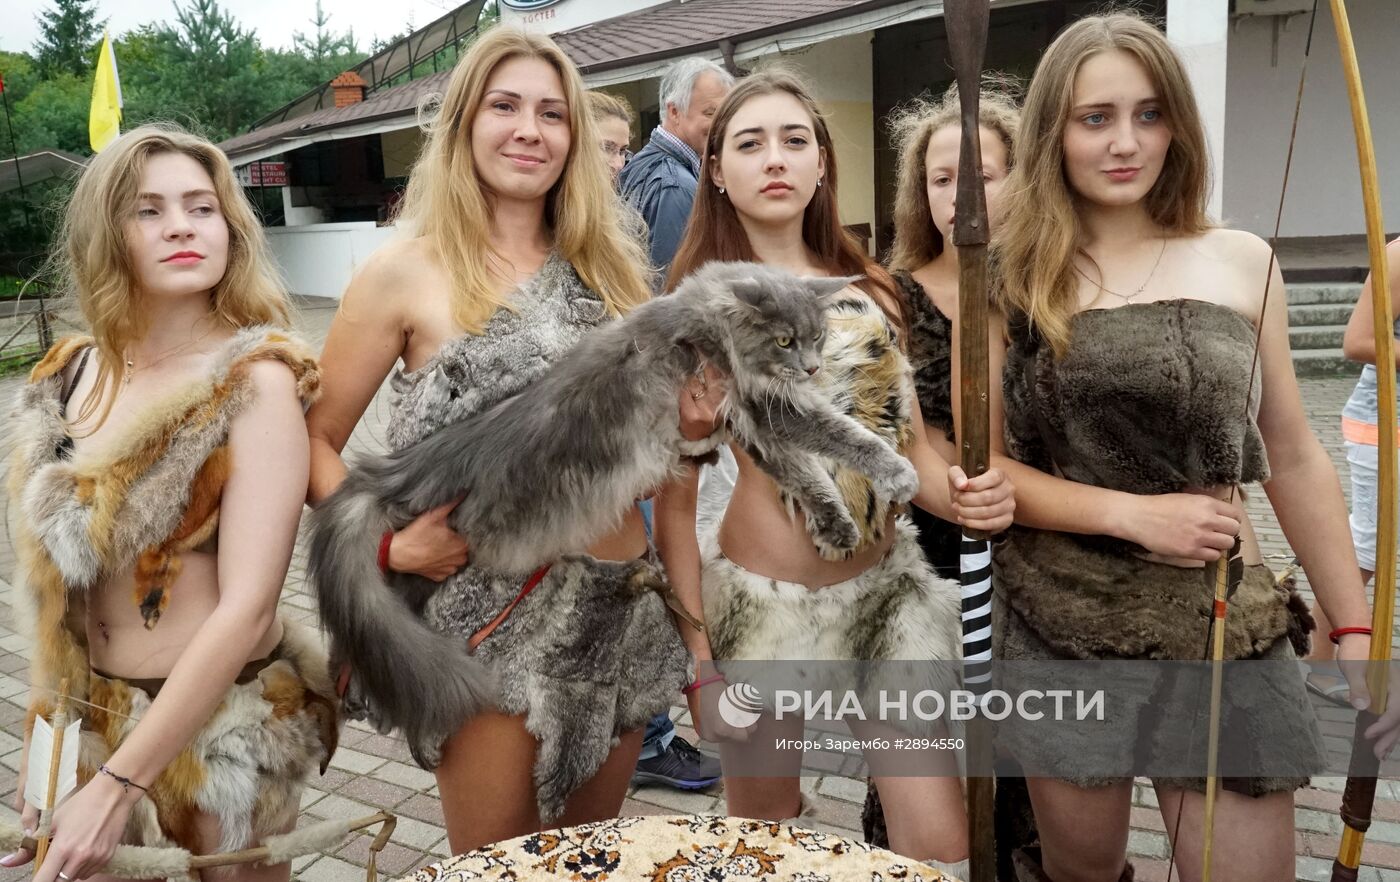 Фестиваль "Янтарный горн" в Калининградской области